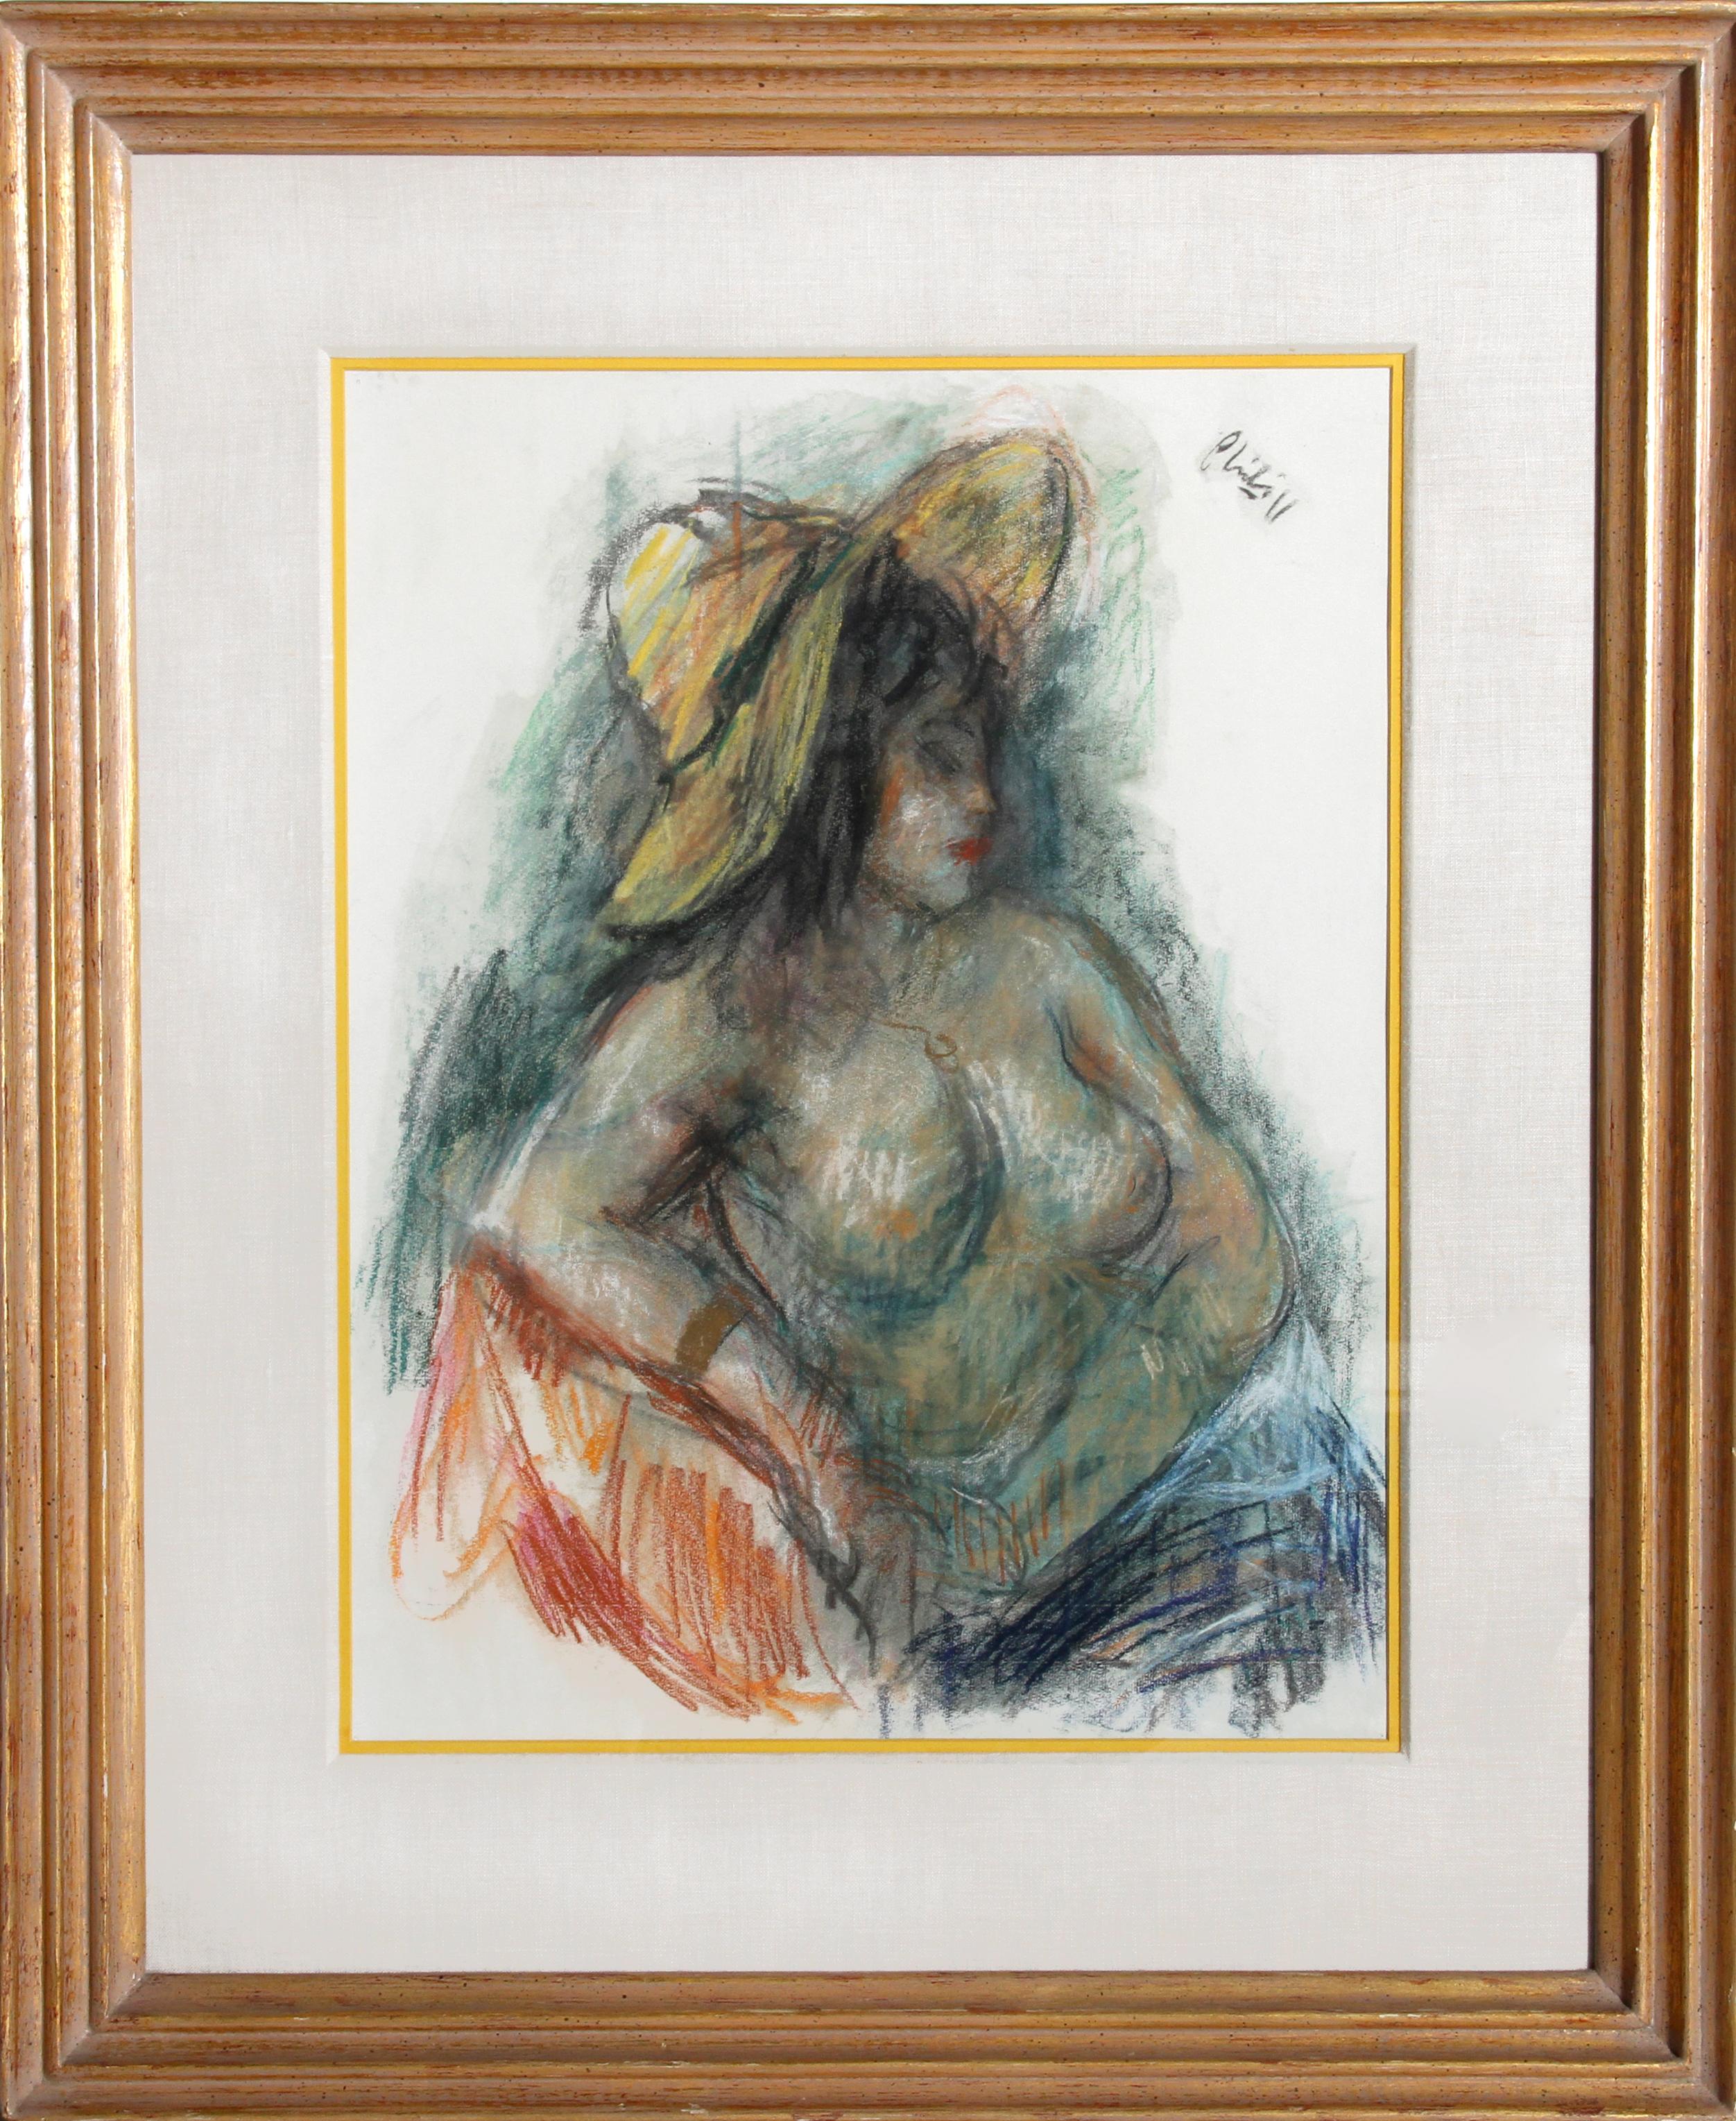 Femme nue assise portant un chapeau jaune, dessin au pastel de Robert Philipp